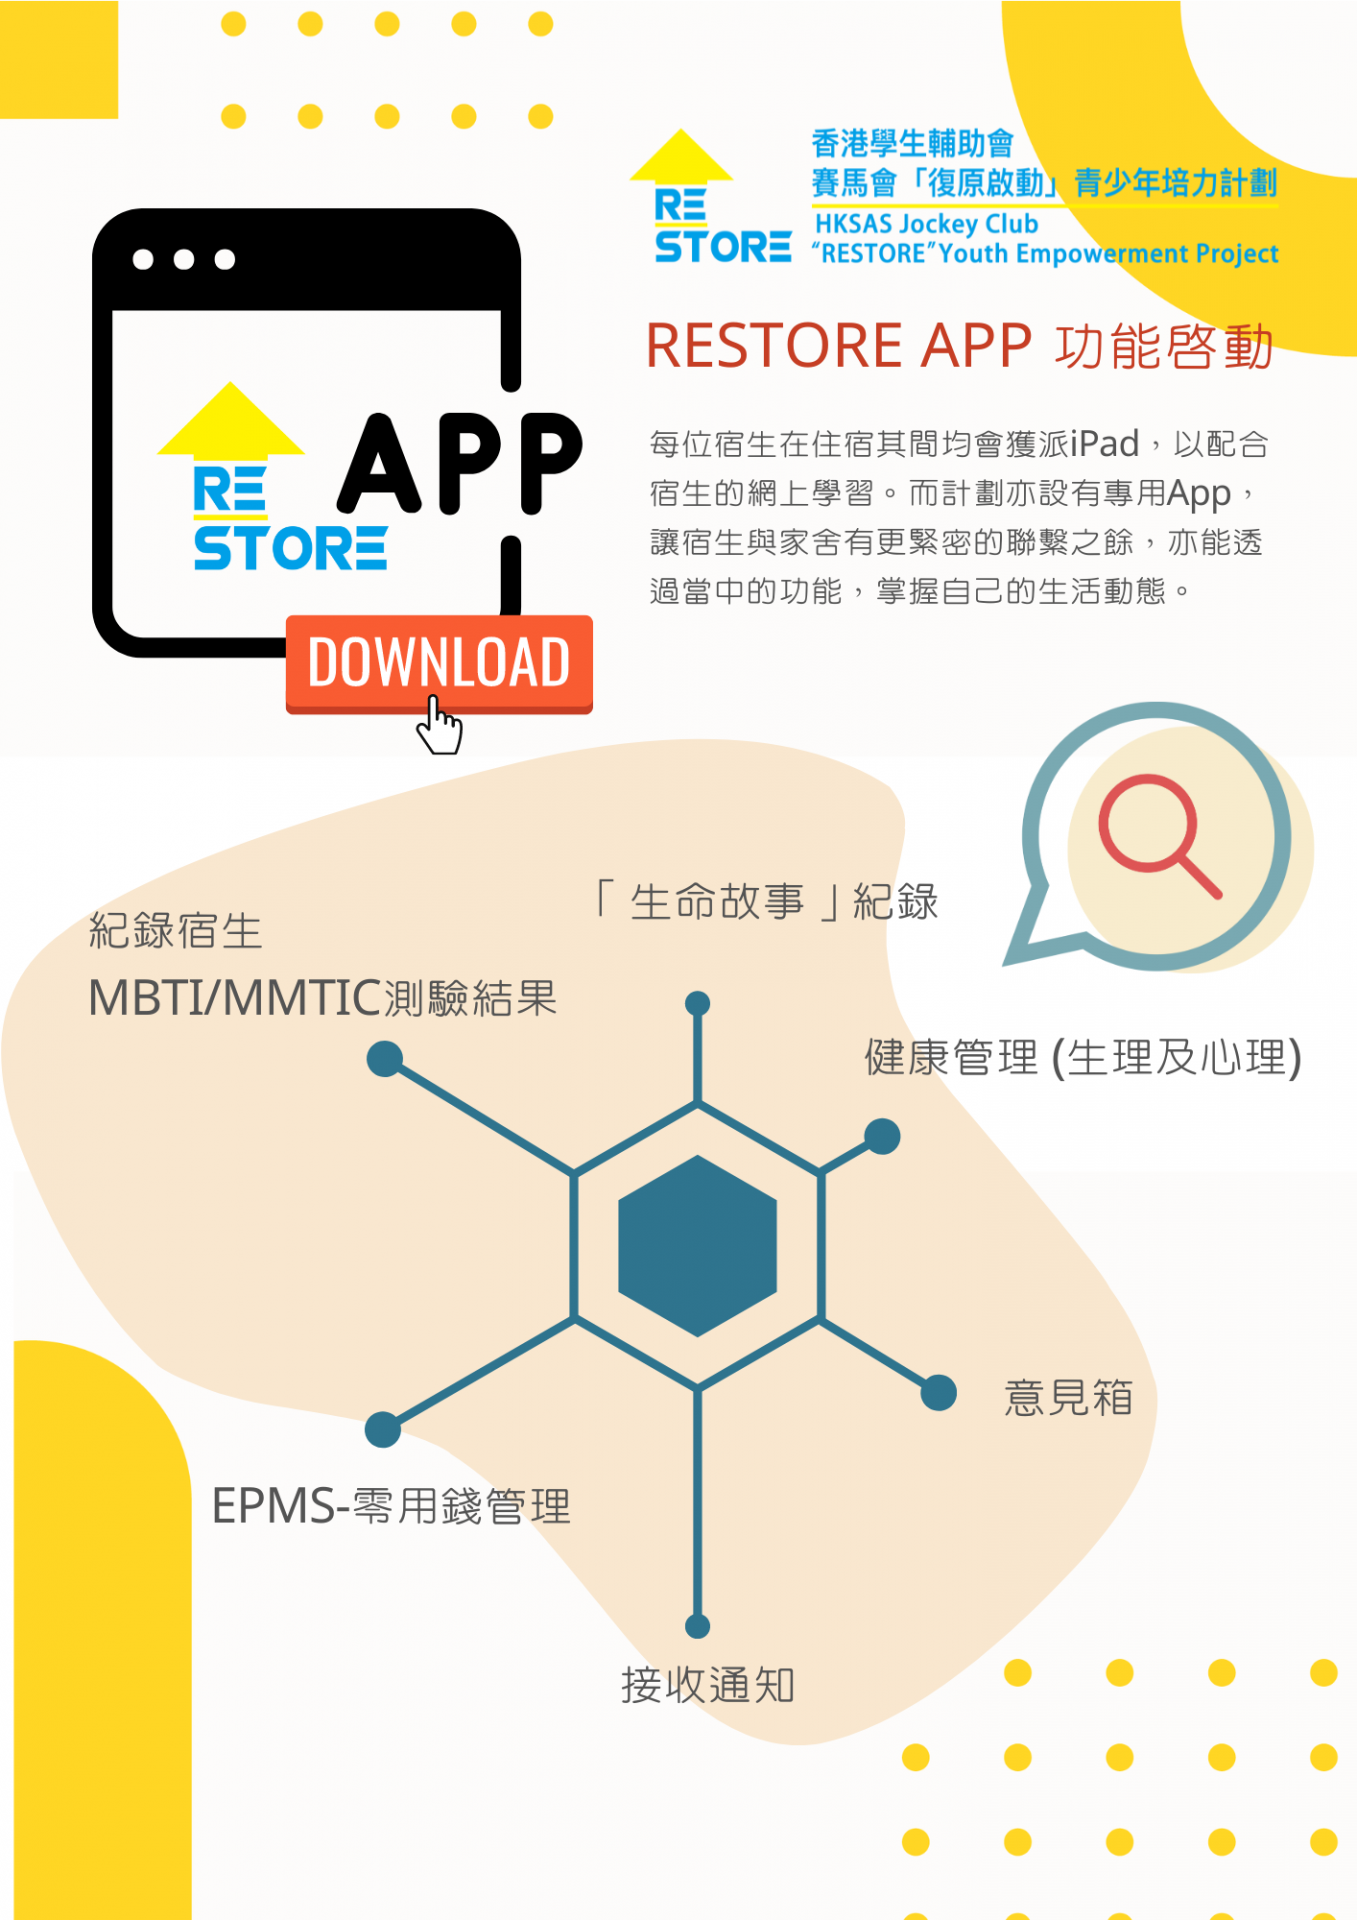 Launch of RESTORE App